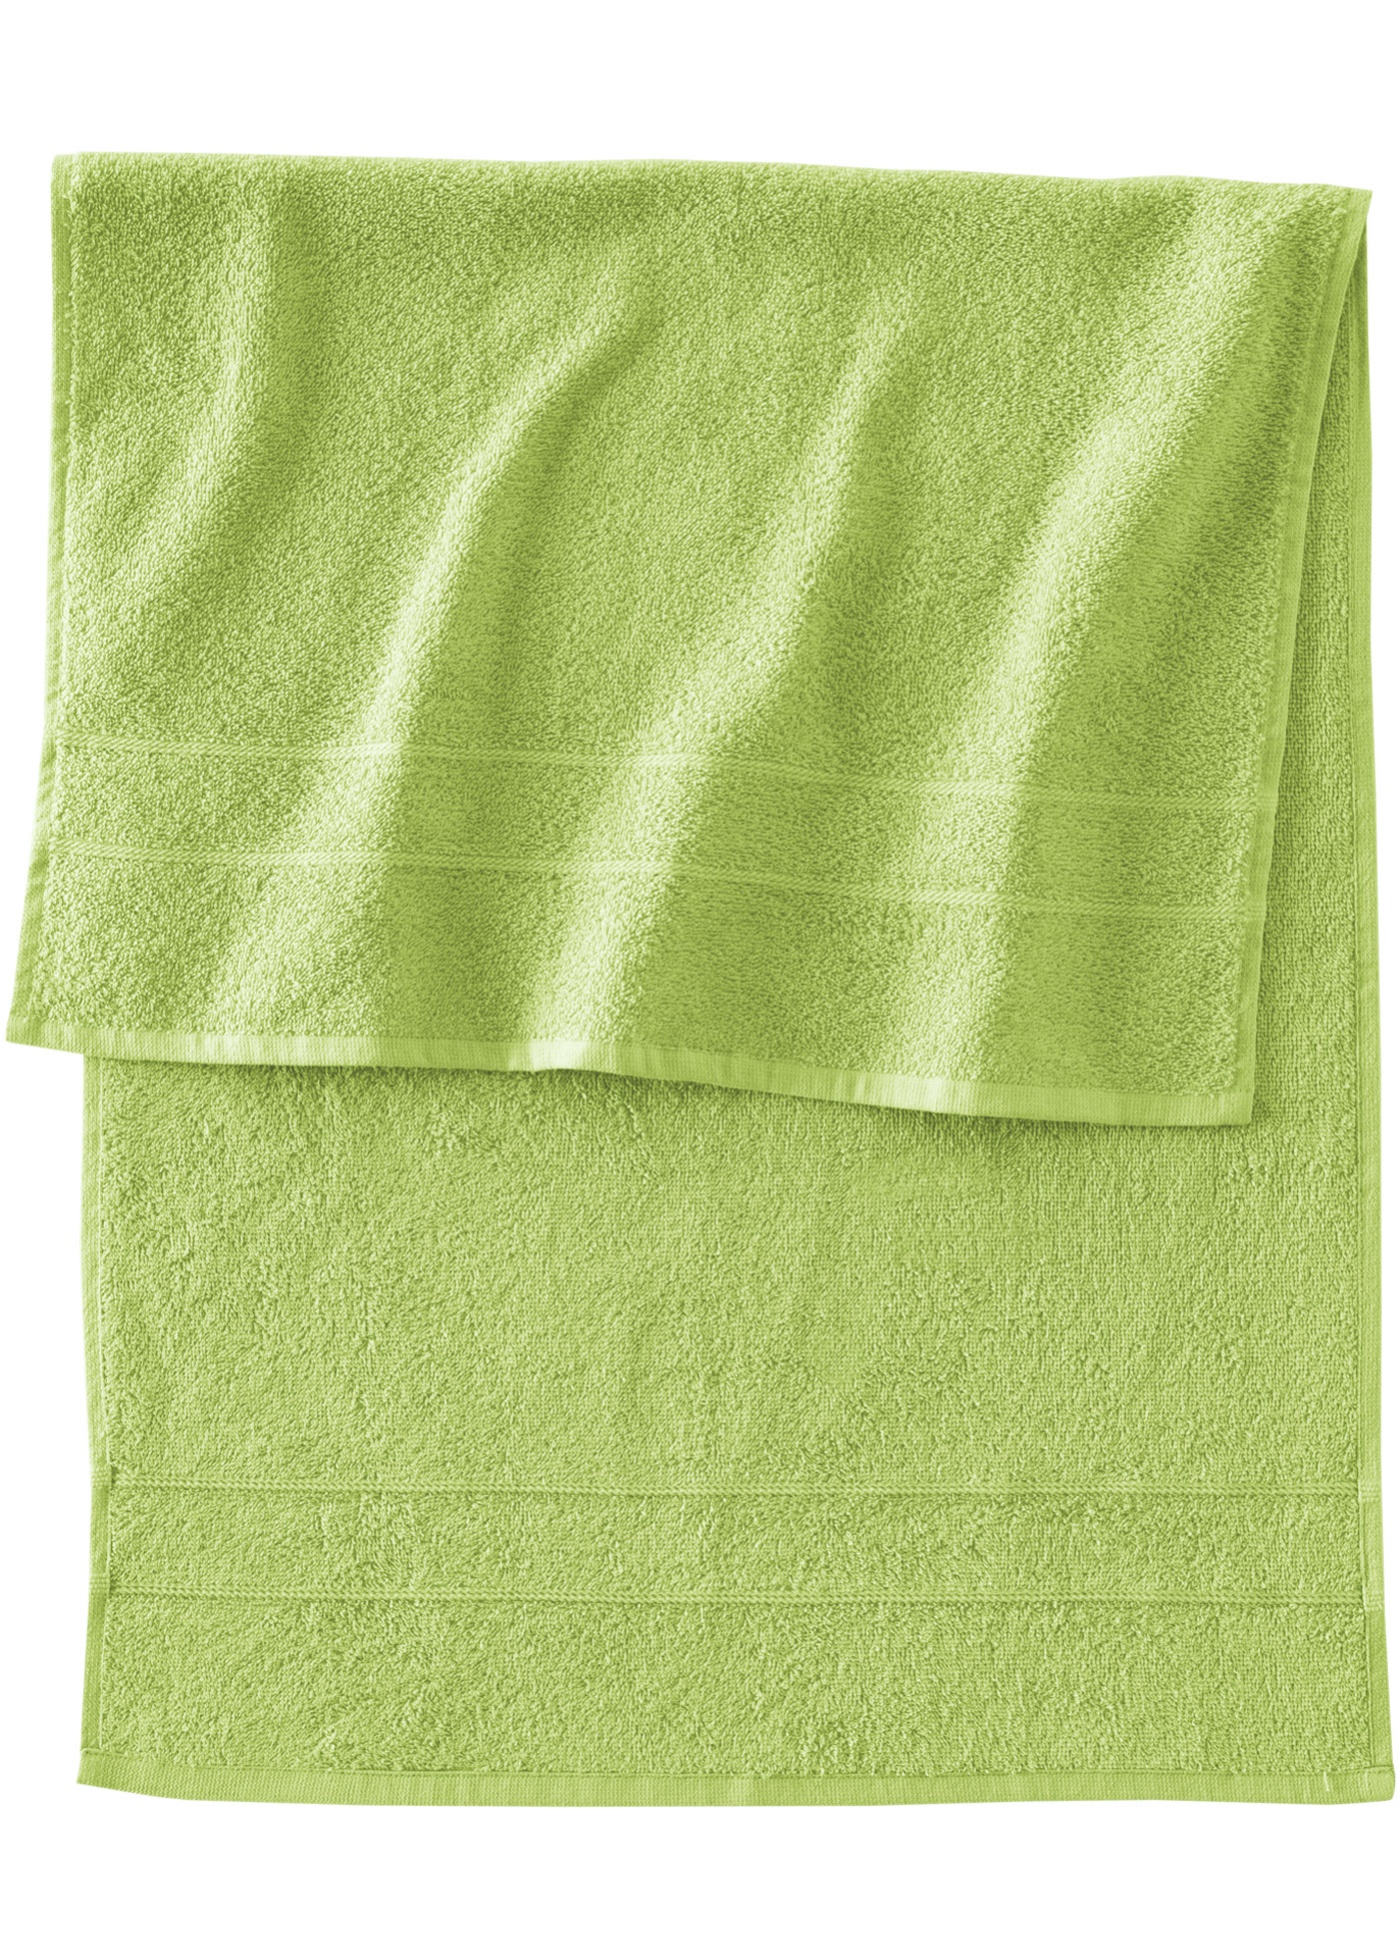 Полотенце весит. Полотенце. Зеленое полотенце. Банное полотенце. Полотенце махровое зеленый.